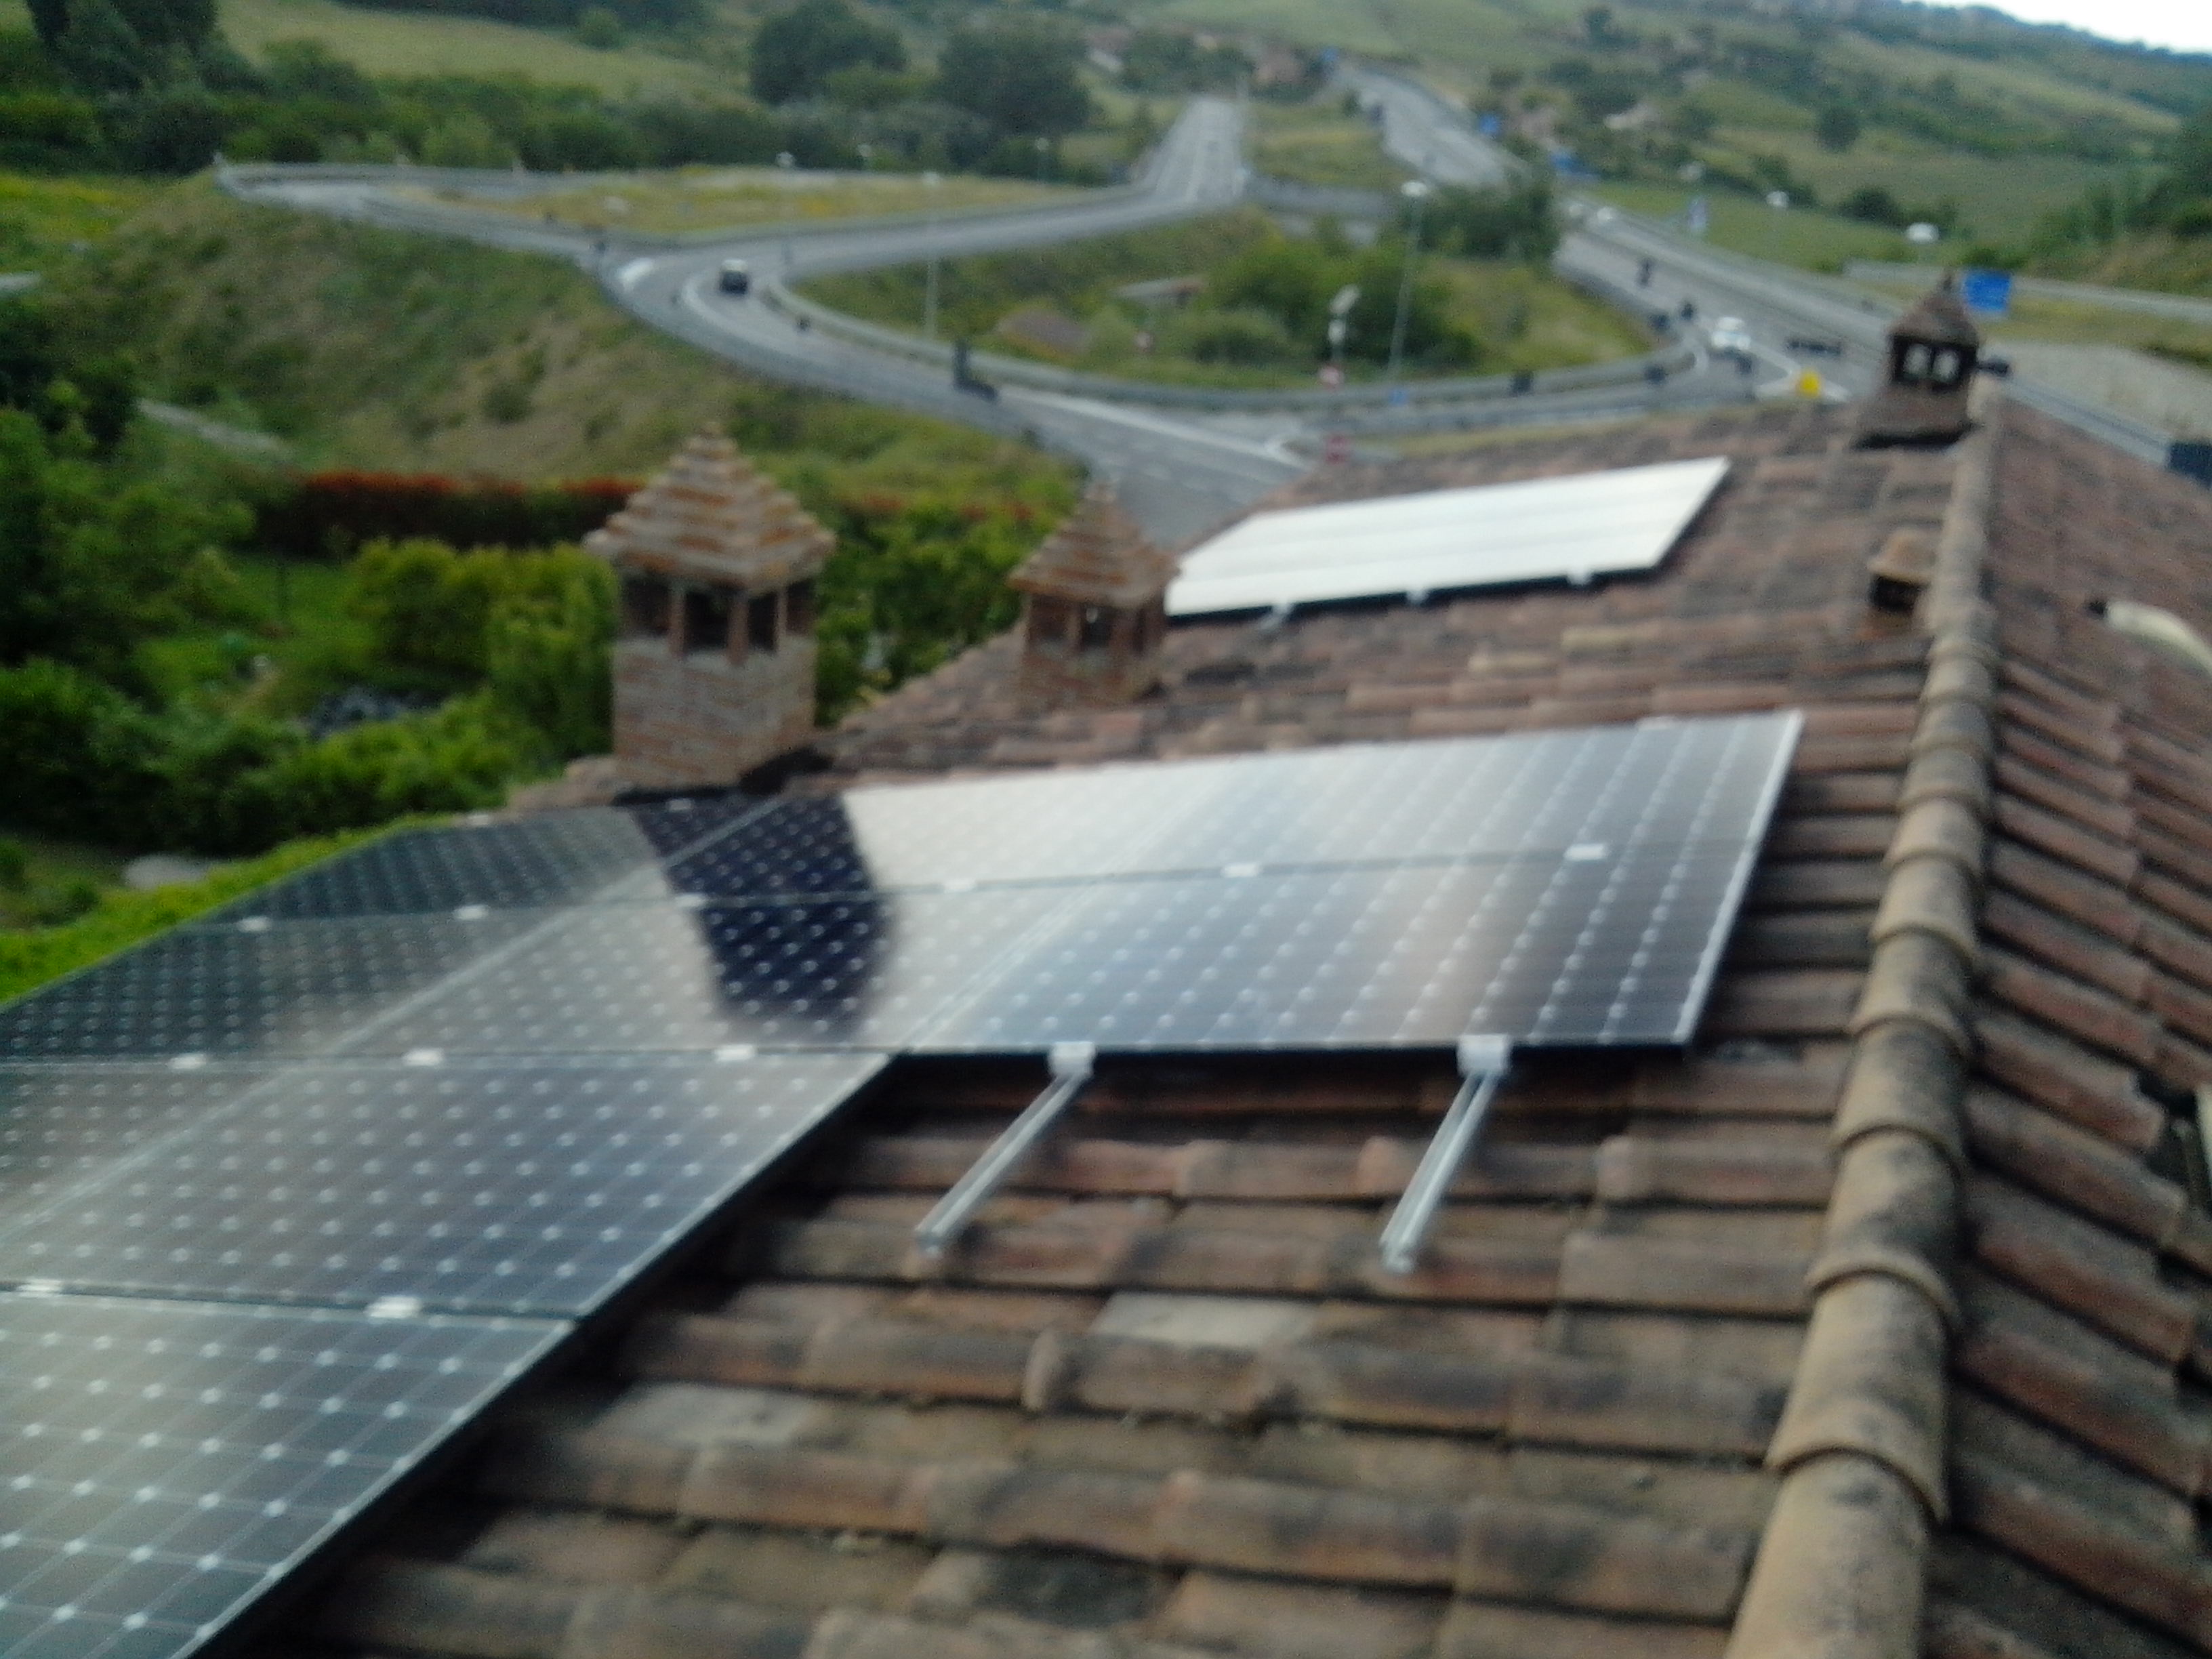 Impianto Fotovoltaico SunPower della Lightland a Taverne d'Arbia, Siena, Toscana